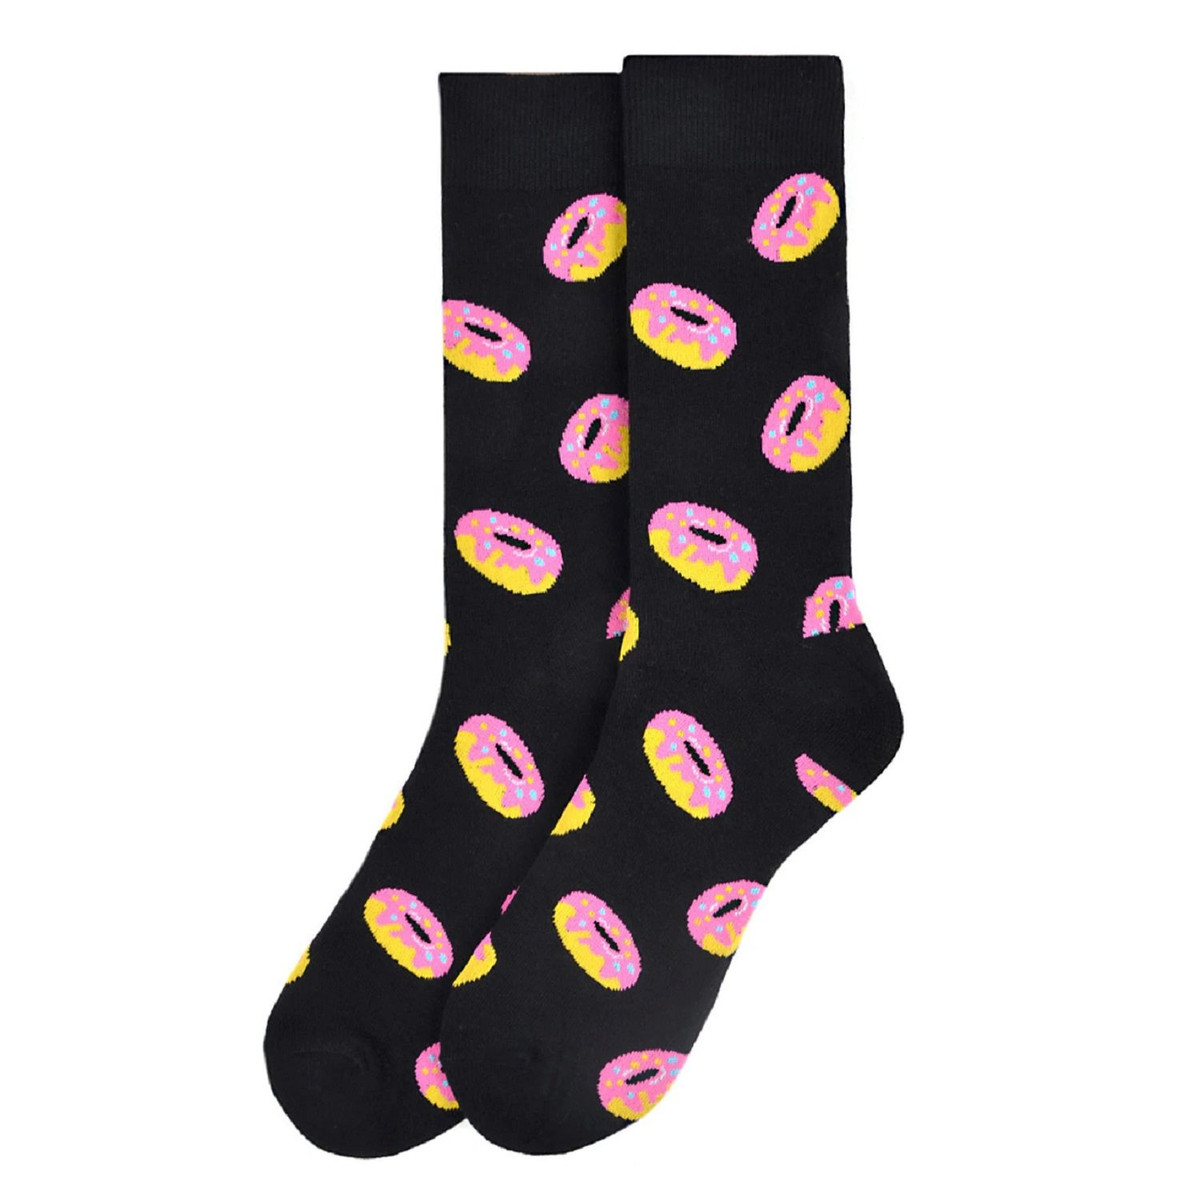 Men's Strawberry Doughnut Crew Novelty Socks - Black